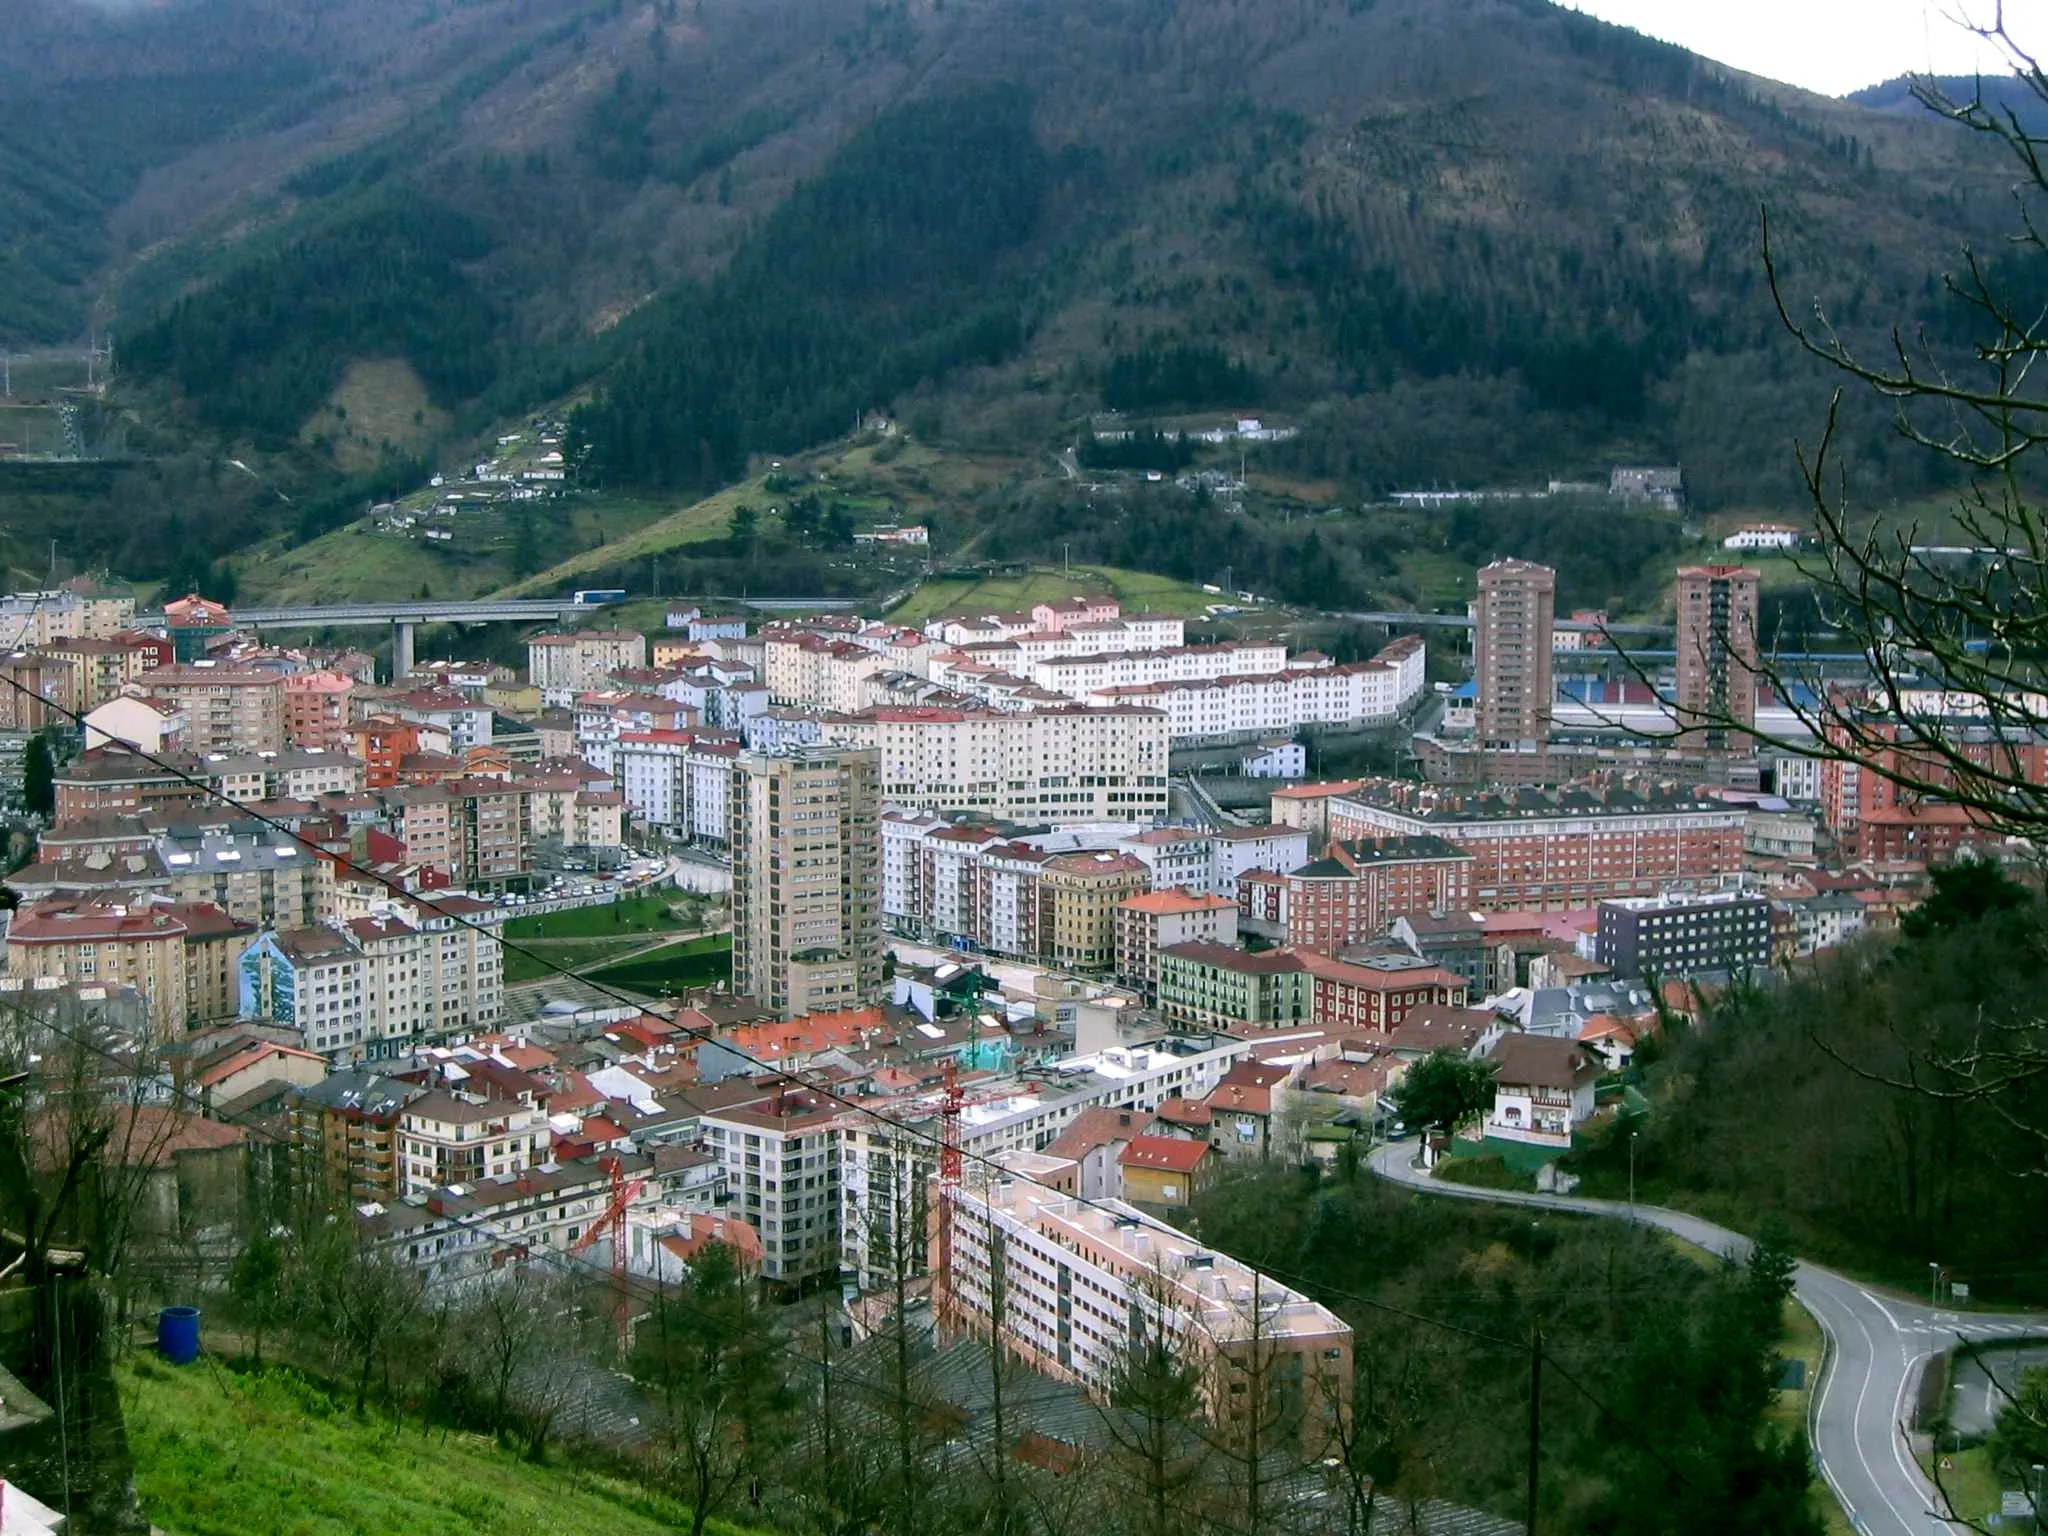 Zdjęcie: Kraj Basków